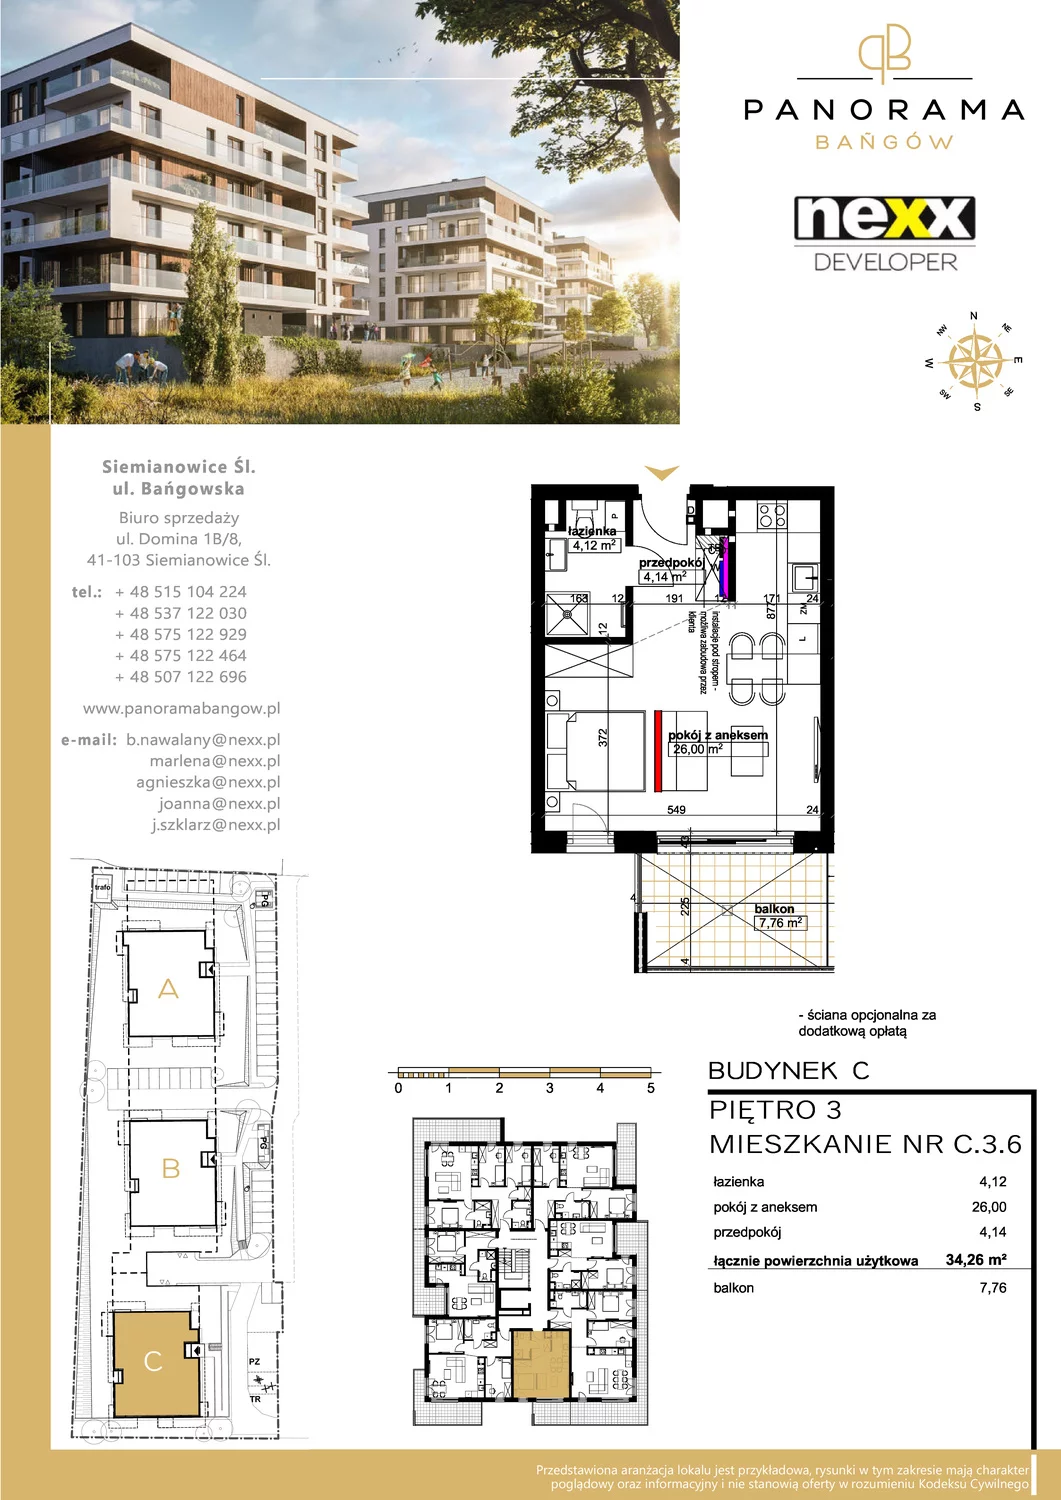 Mieszkanie 34,26 m², piętro 3, oferta nr C 3.6, Panorama Bańgów, Siemianowice Śląskie, Bańgów, ul. Bańgowska